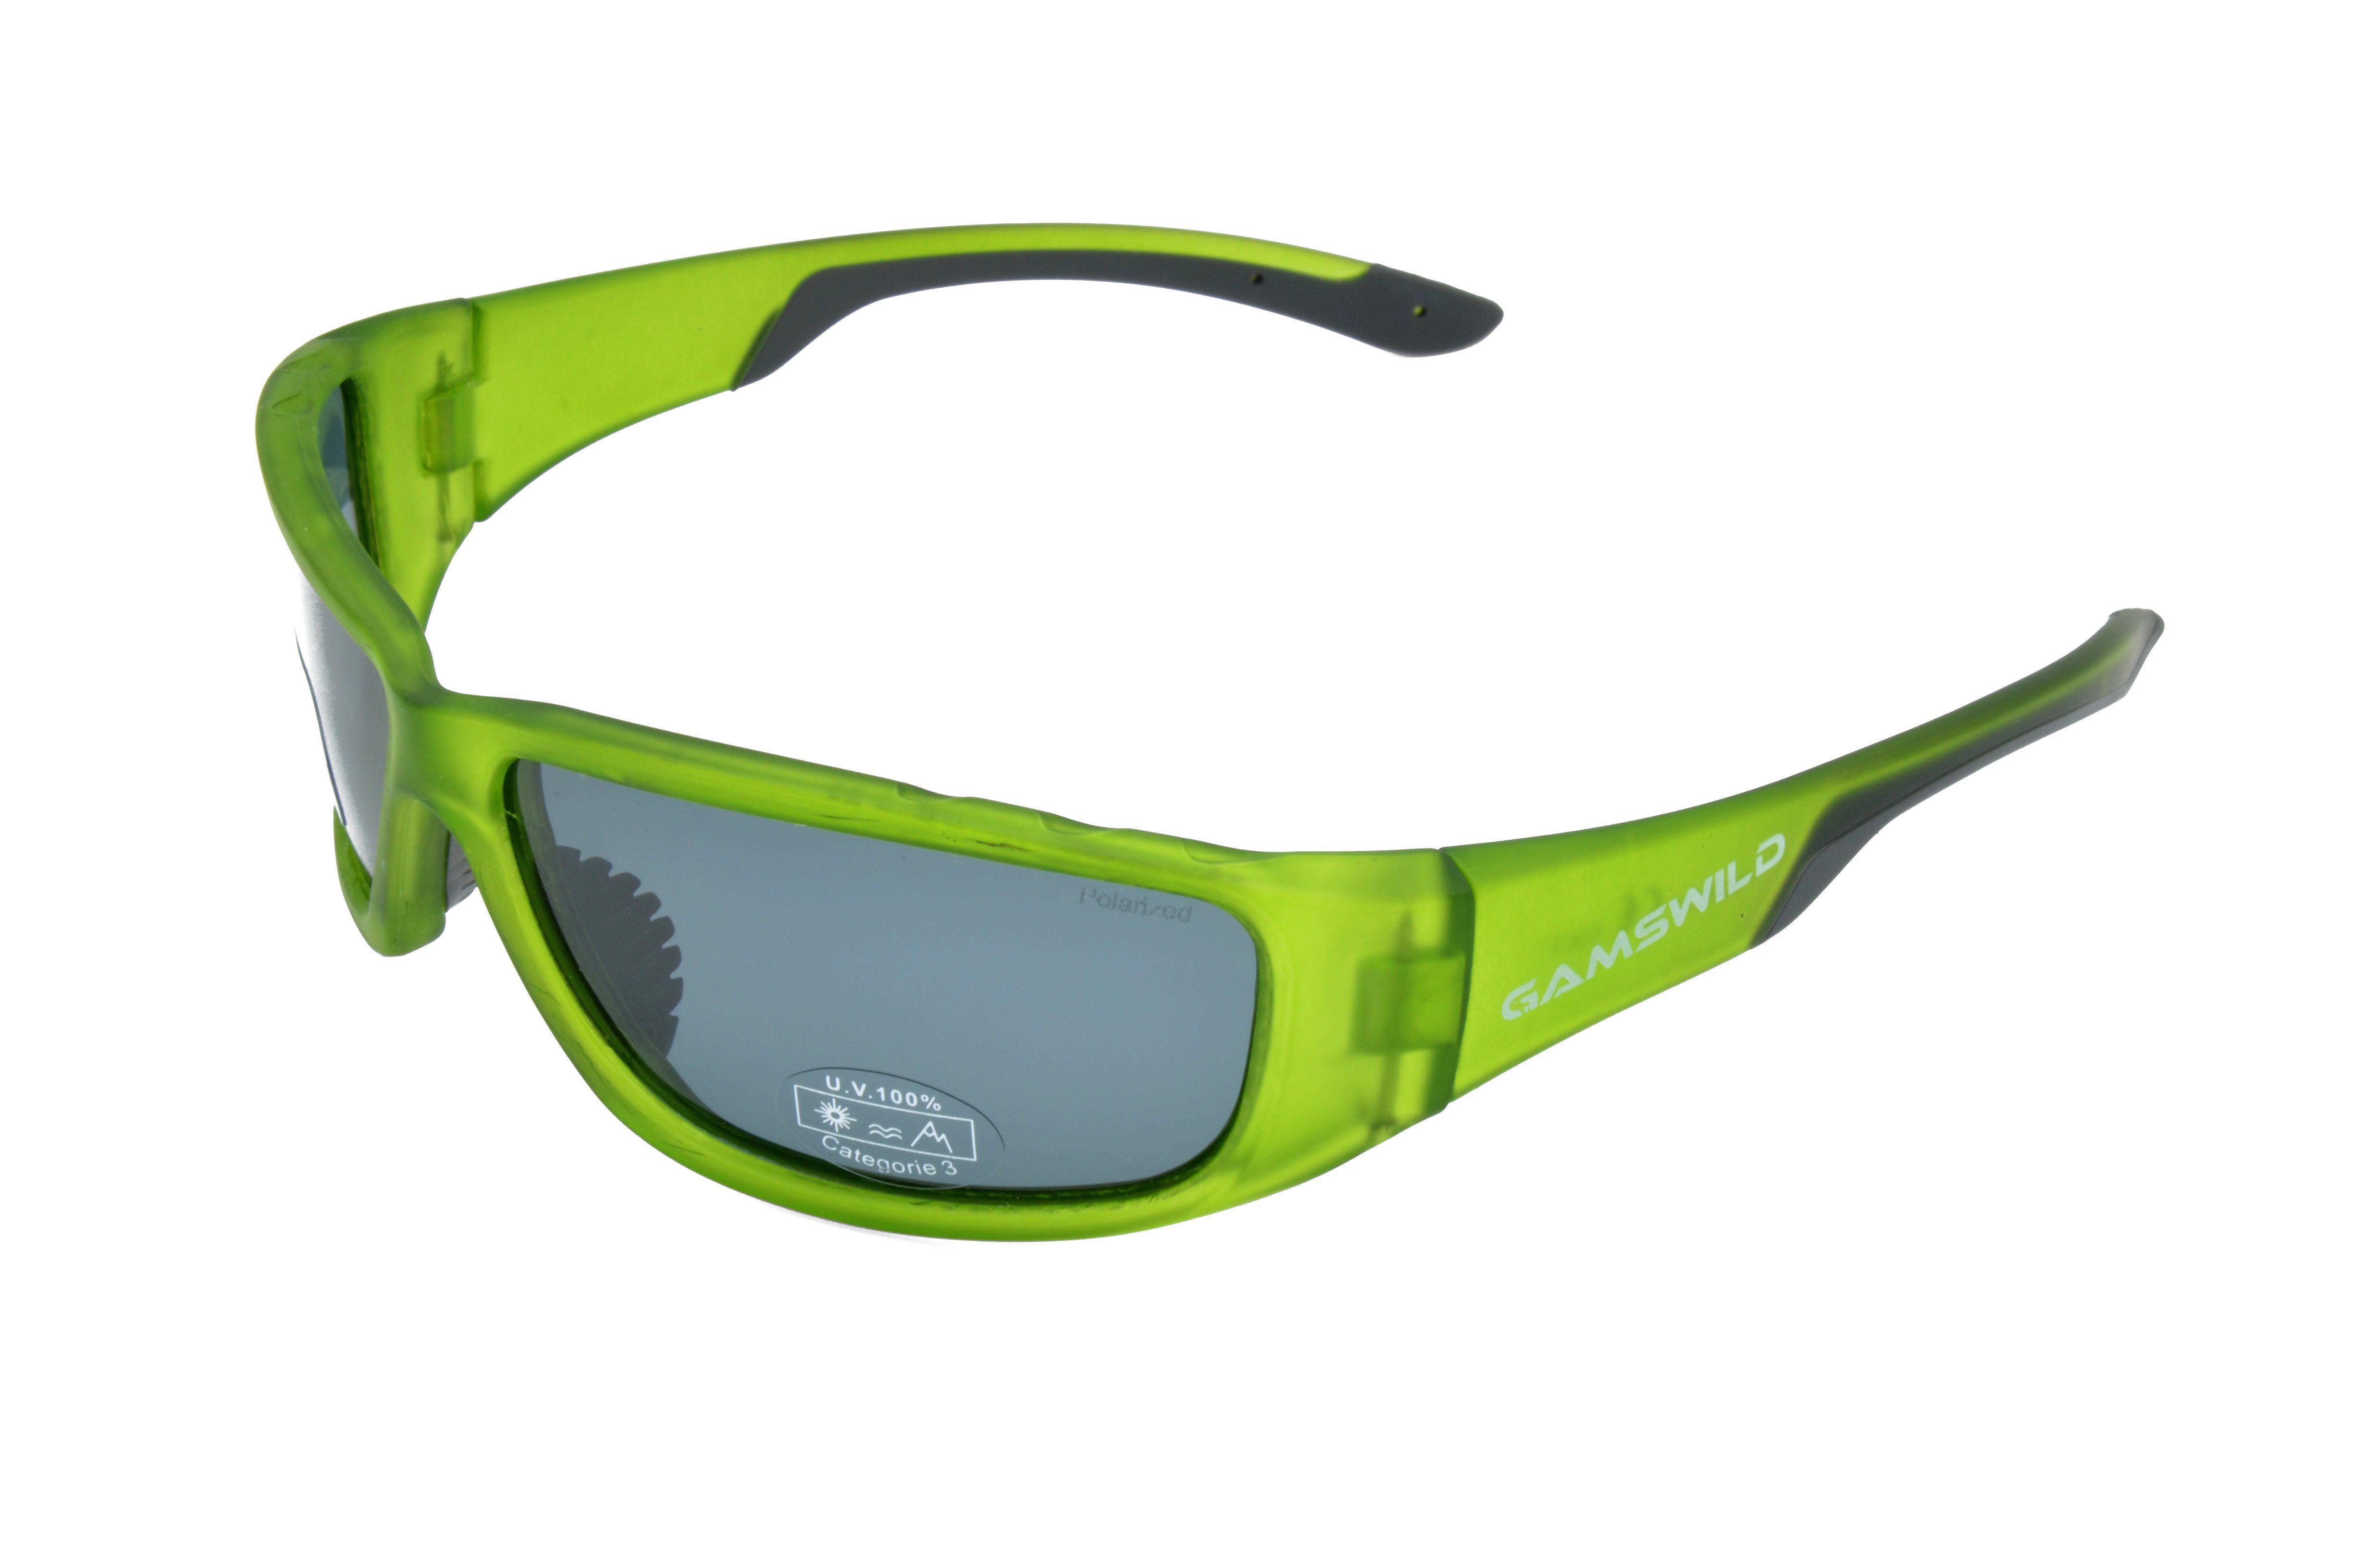 Gamswild Sonnenbrille WS9331 Sportbrille Damen Herren Fahrradbrille Skibrille Unisex polarisiert rot, grün, blau halbtransparente Fassung